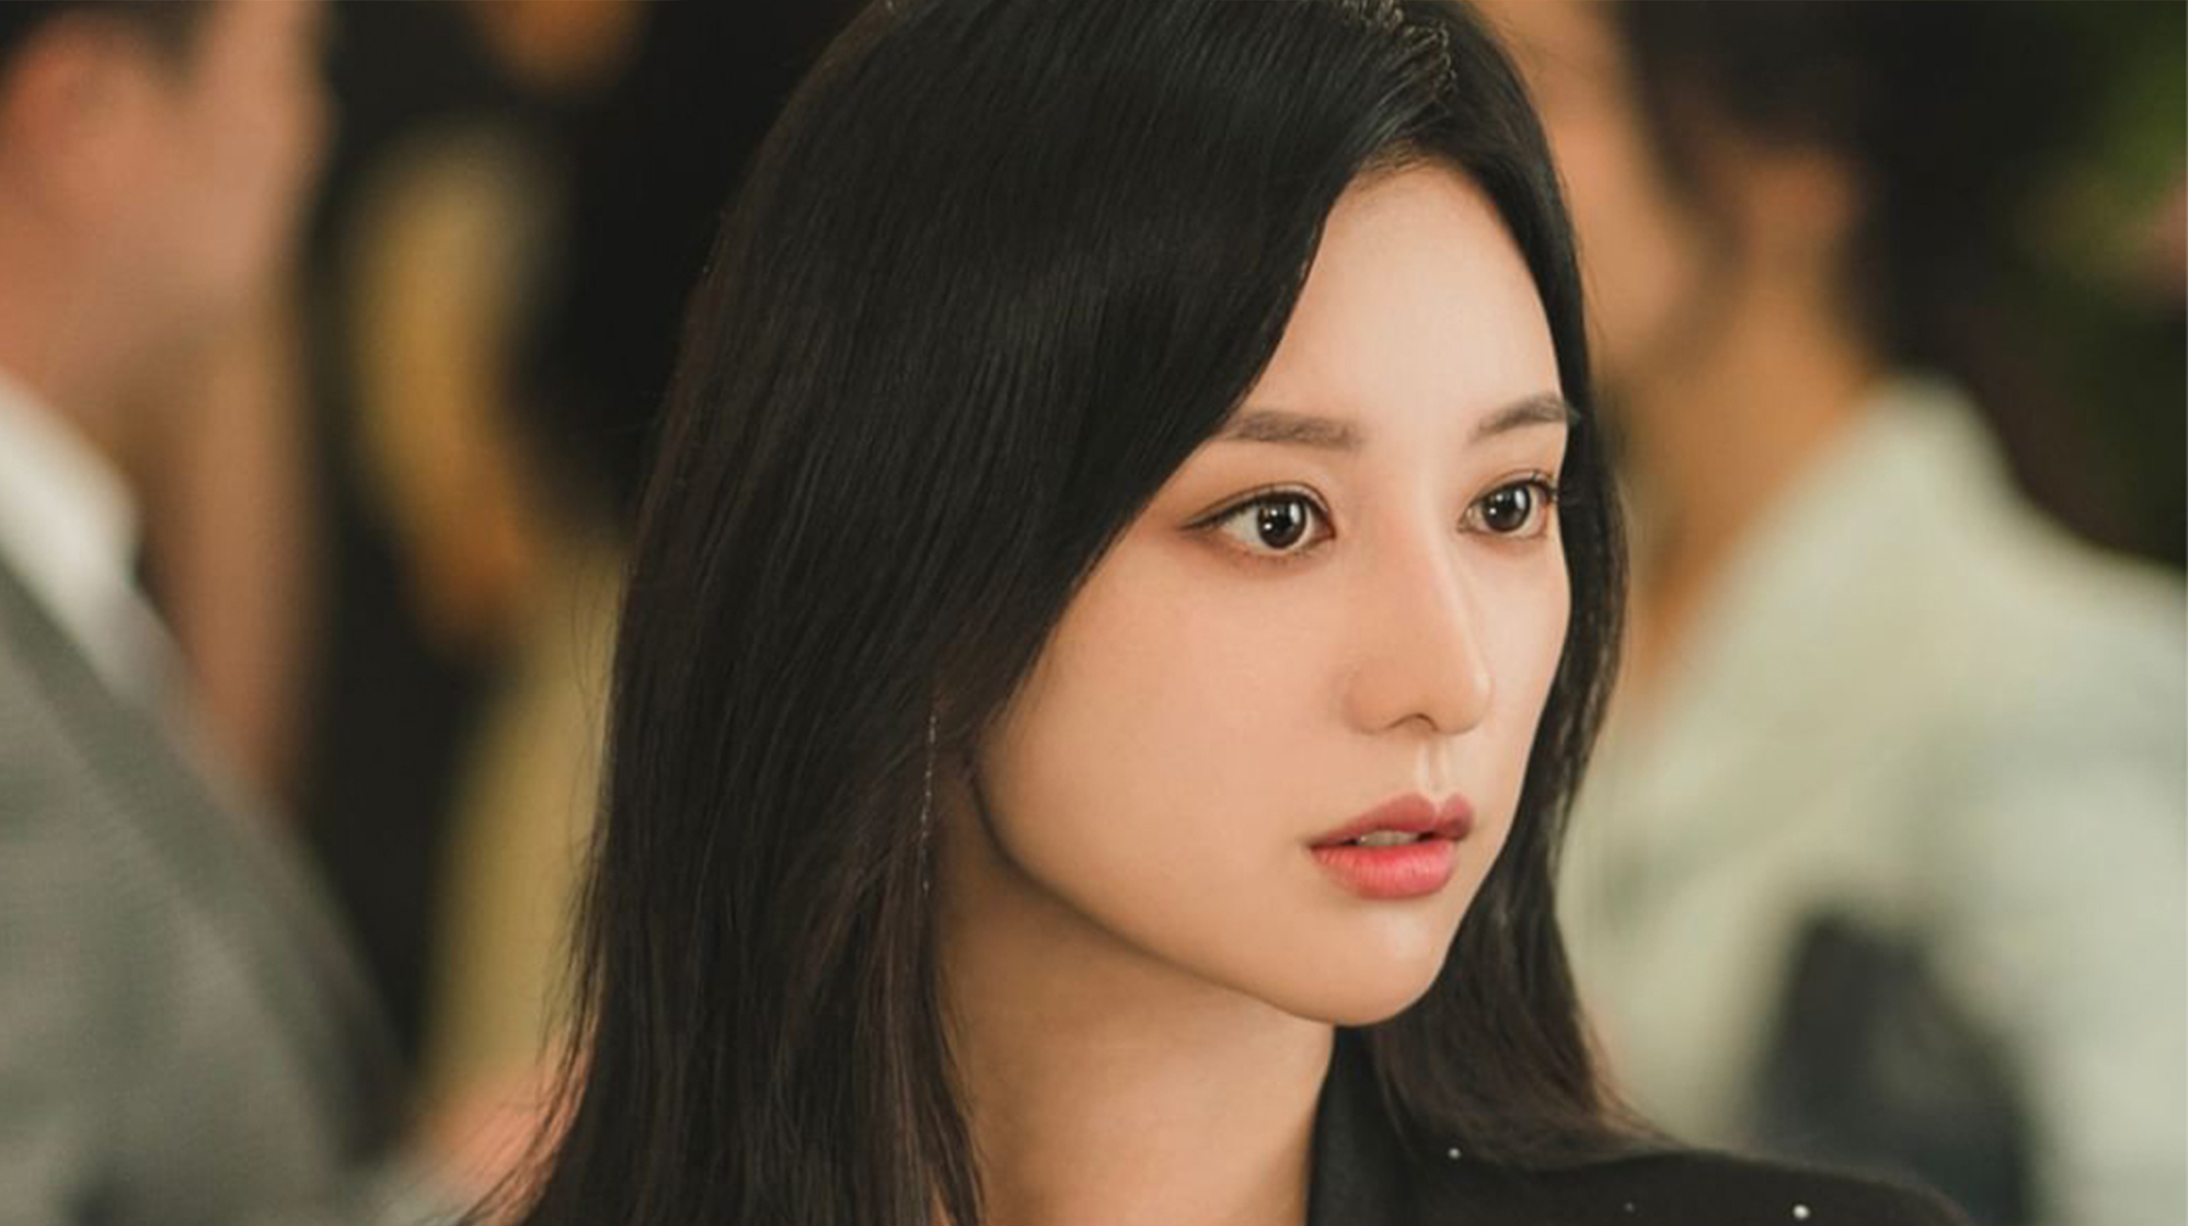 Hong Hae-in’s best looks in Netflix’s ‘Queen of Tears’